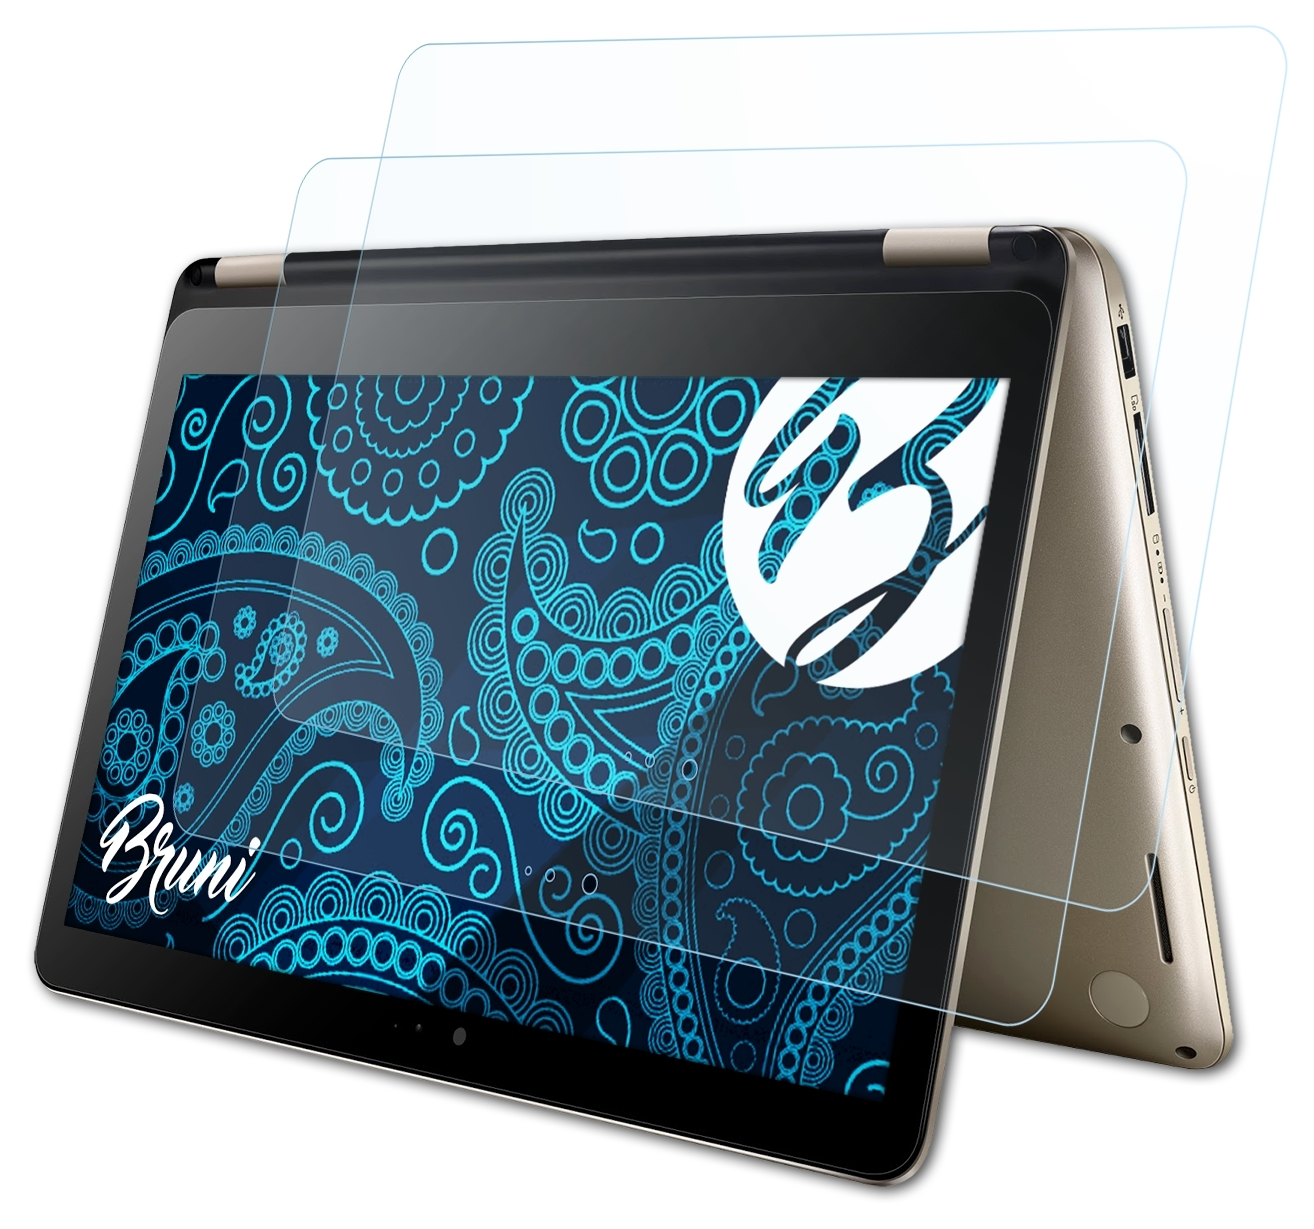 BRUNI 2x Basics-Clear Schutzfolie(für Asus TP301) VivoBook Flip